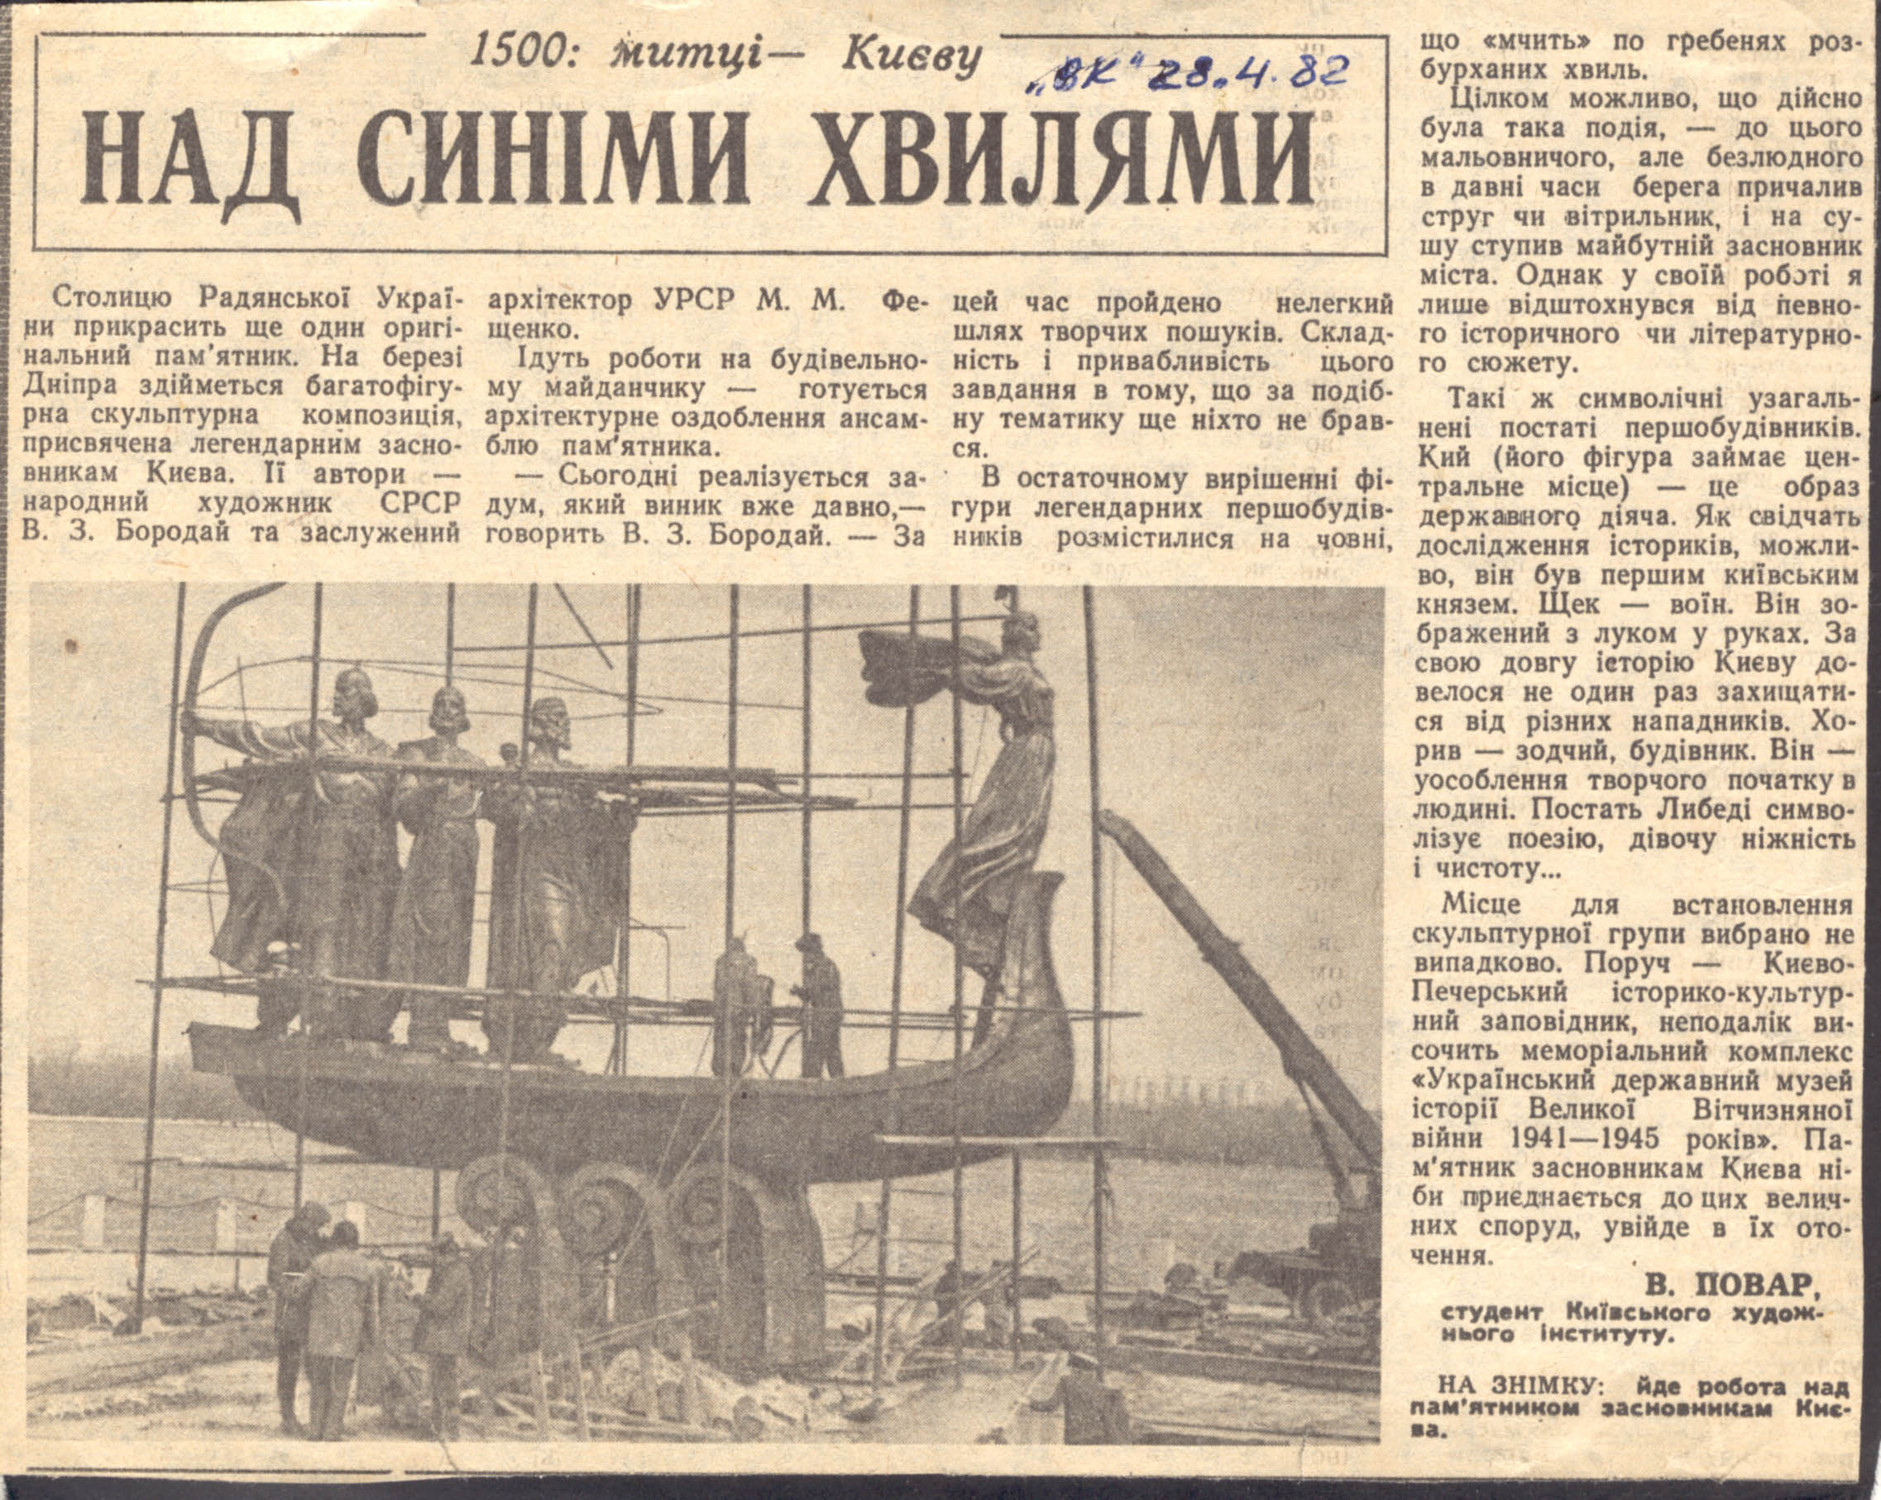 Статья в Вечернем Киеве об открытии памятника Кию, Щеку, Хориву и Лыбеди в 1982 году